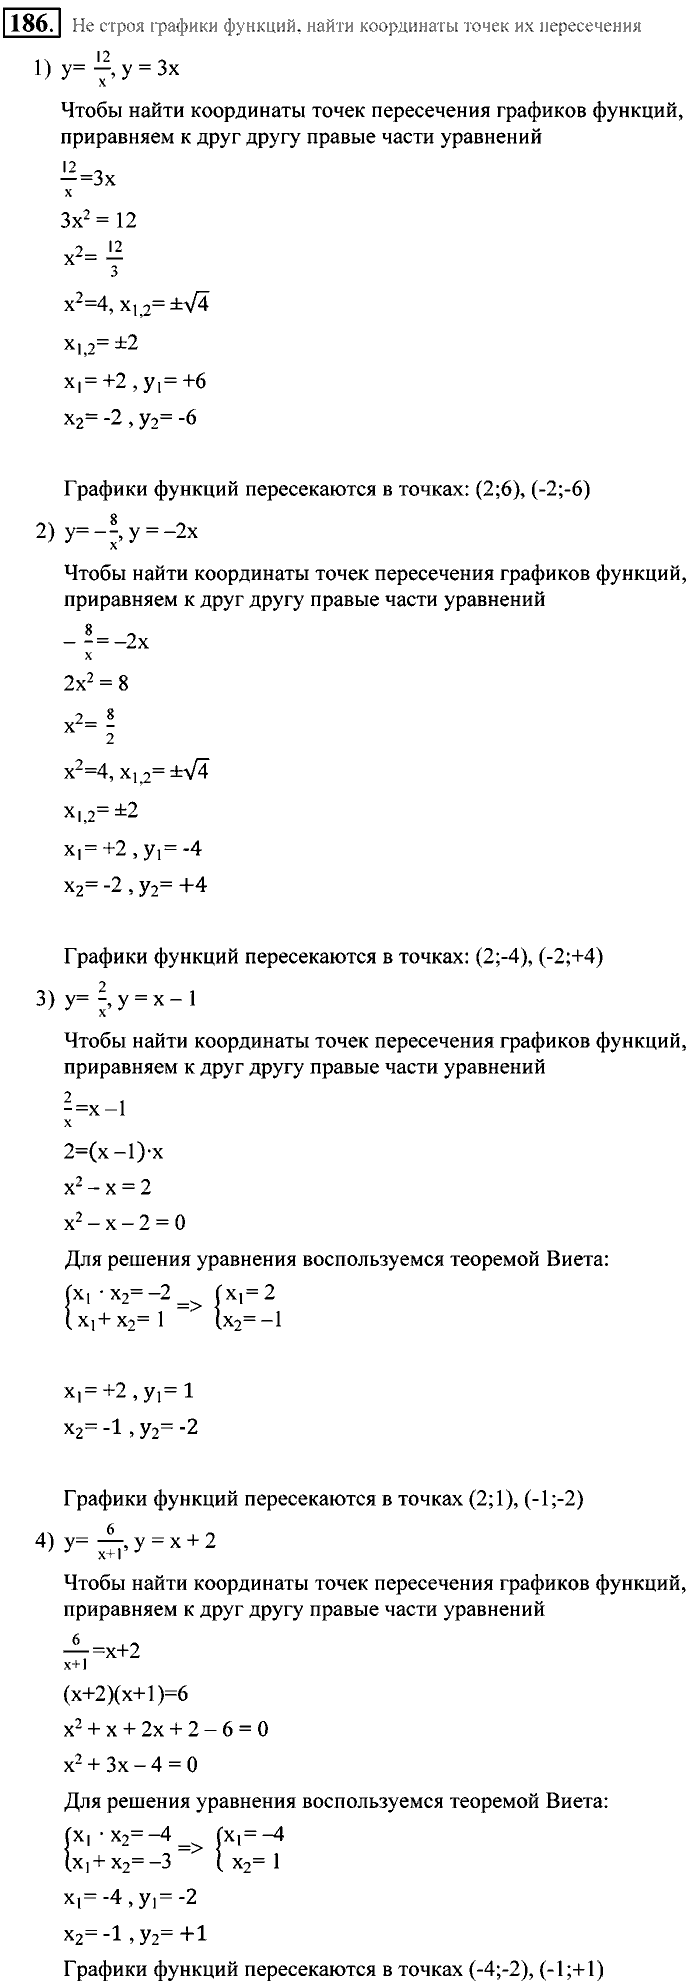 Алгебра, 9 класс, Алимов, Колягин, 2001, Проверь себя Задание: 186